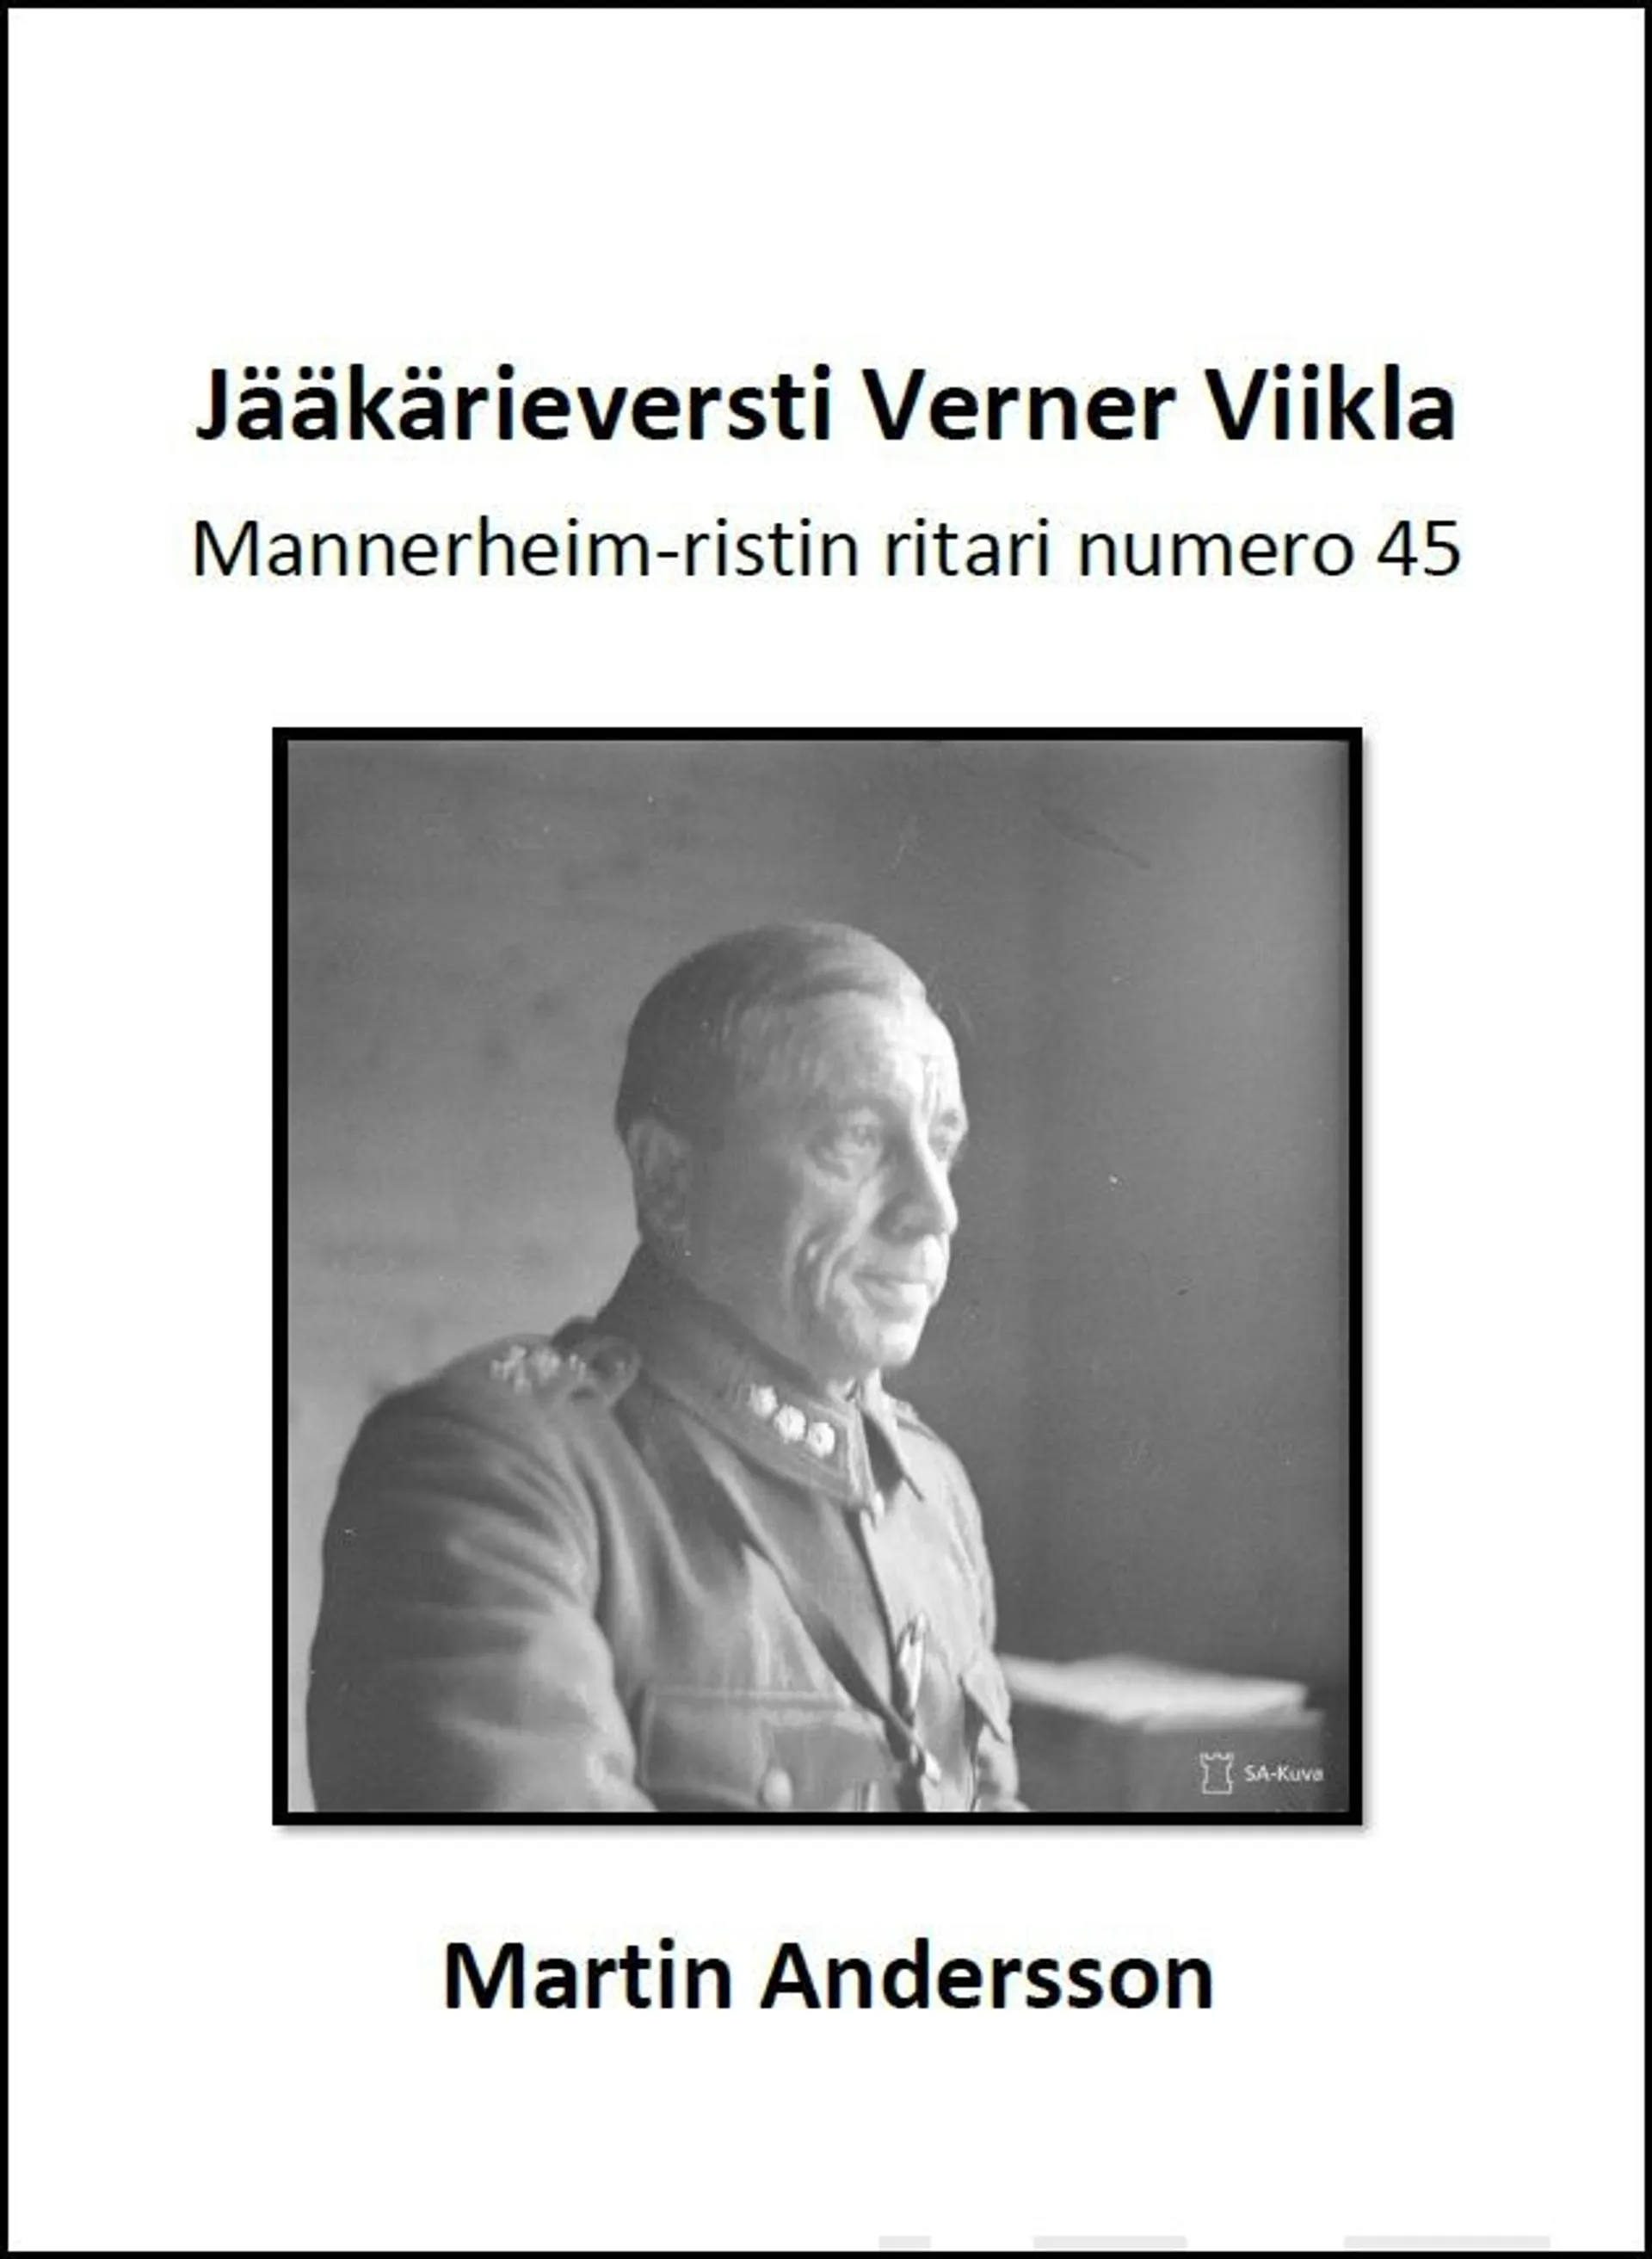 Andersson, Jääkärieversti Verner Viikla